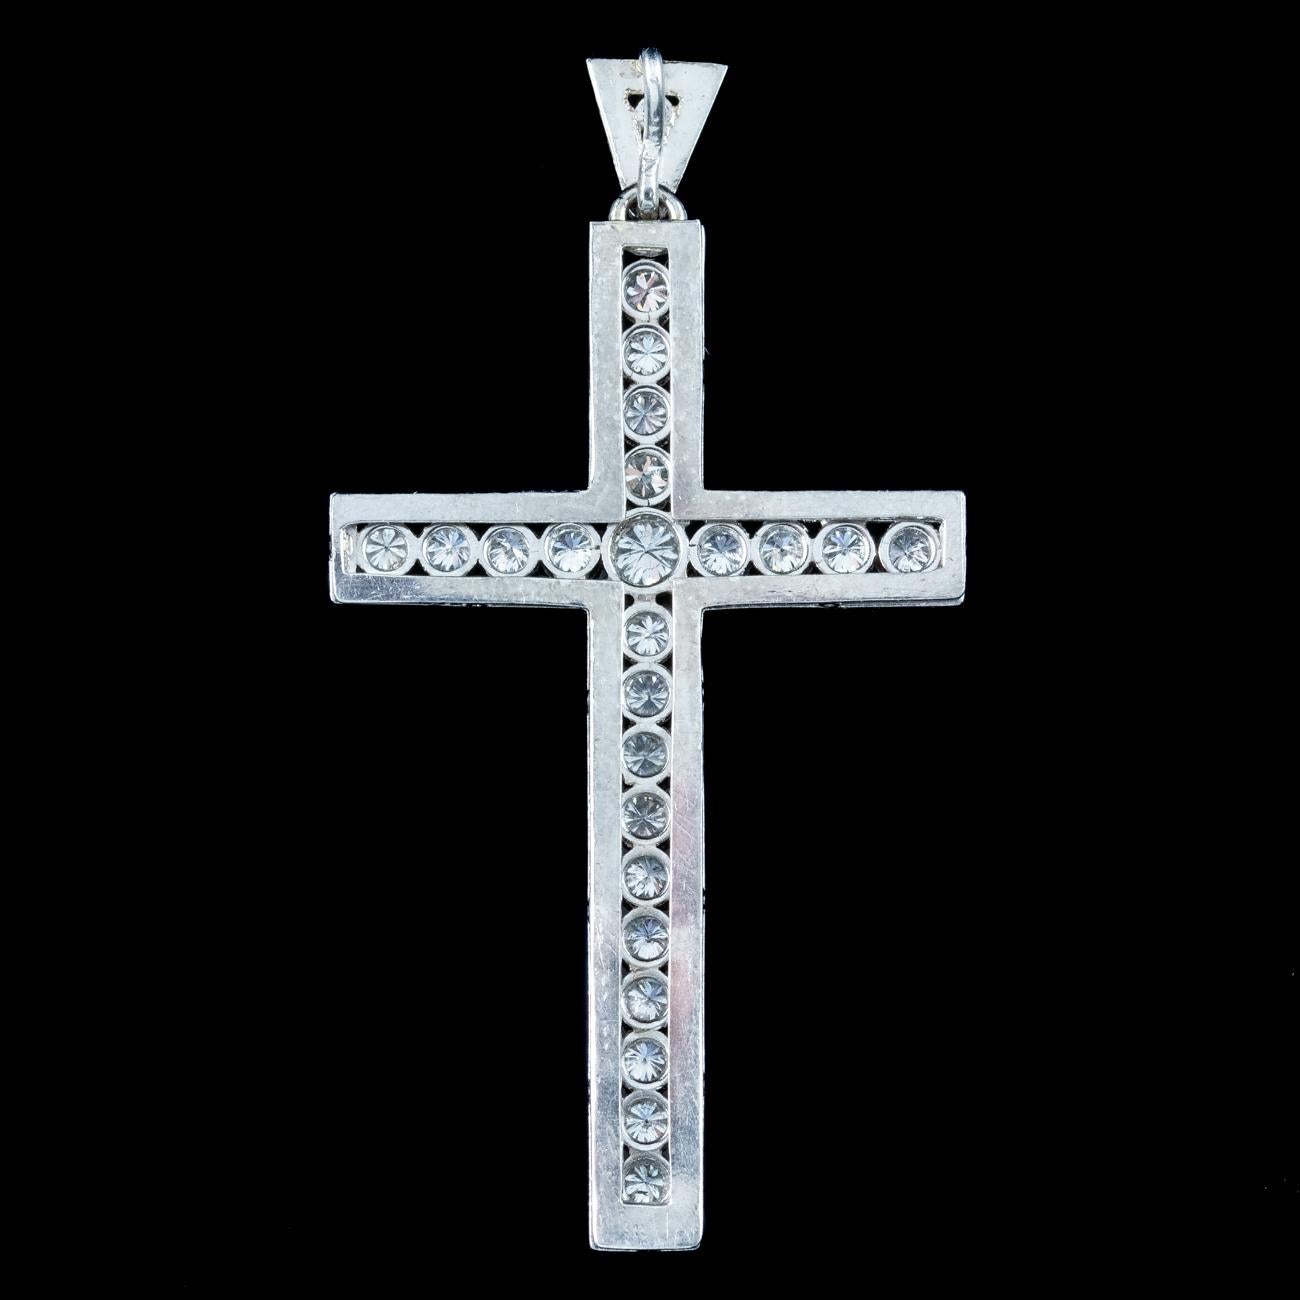 Un magnifique pendentif en forme de croix de l'époque édouardienne, datant du début du 20e siècle, serti de vingt-quatre diamants étincelants de taille brillante répartis sur les barres transversales. Elles ont une superbe pureté SI 1 - couleur H et